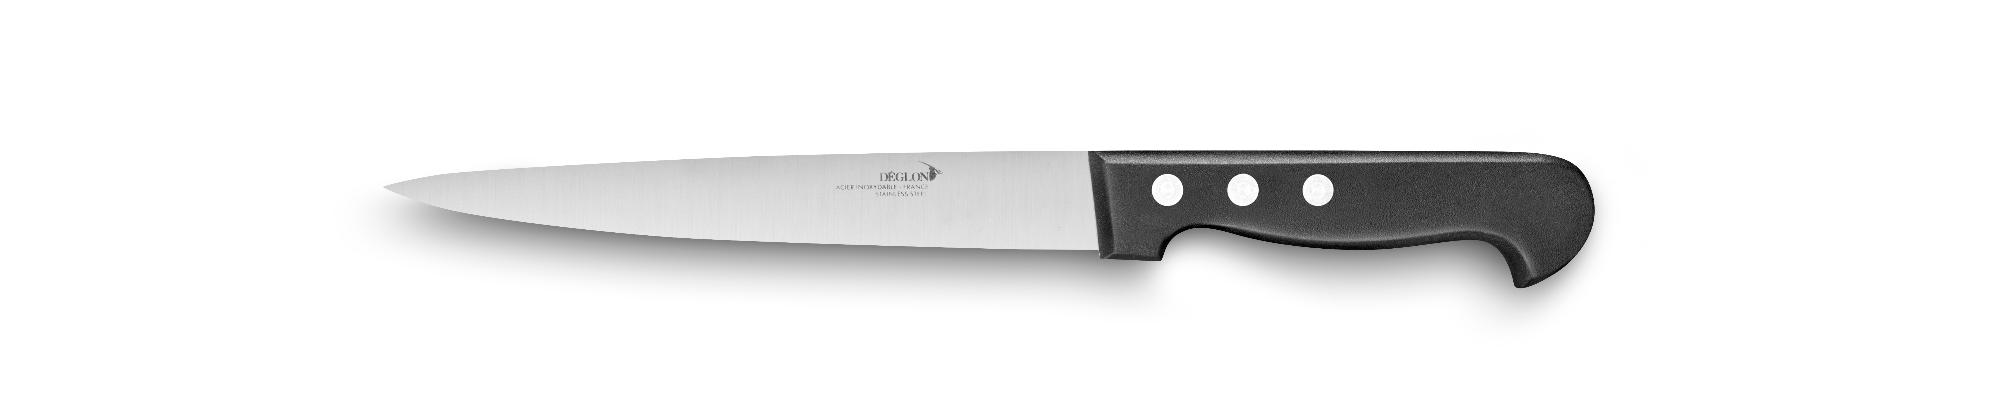 Maxifil flexible skinning knife, 200mm